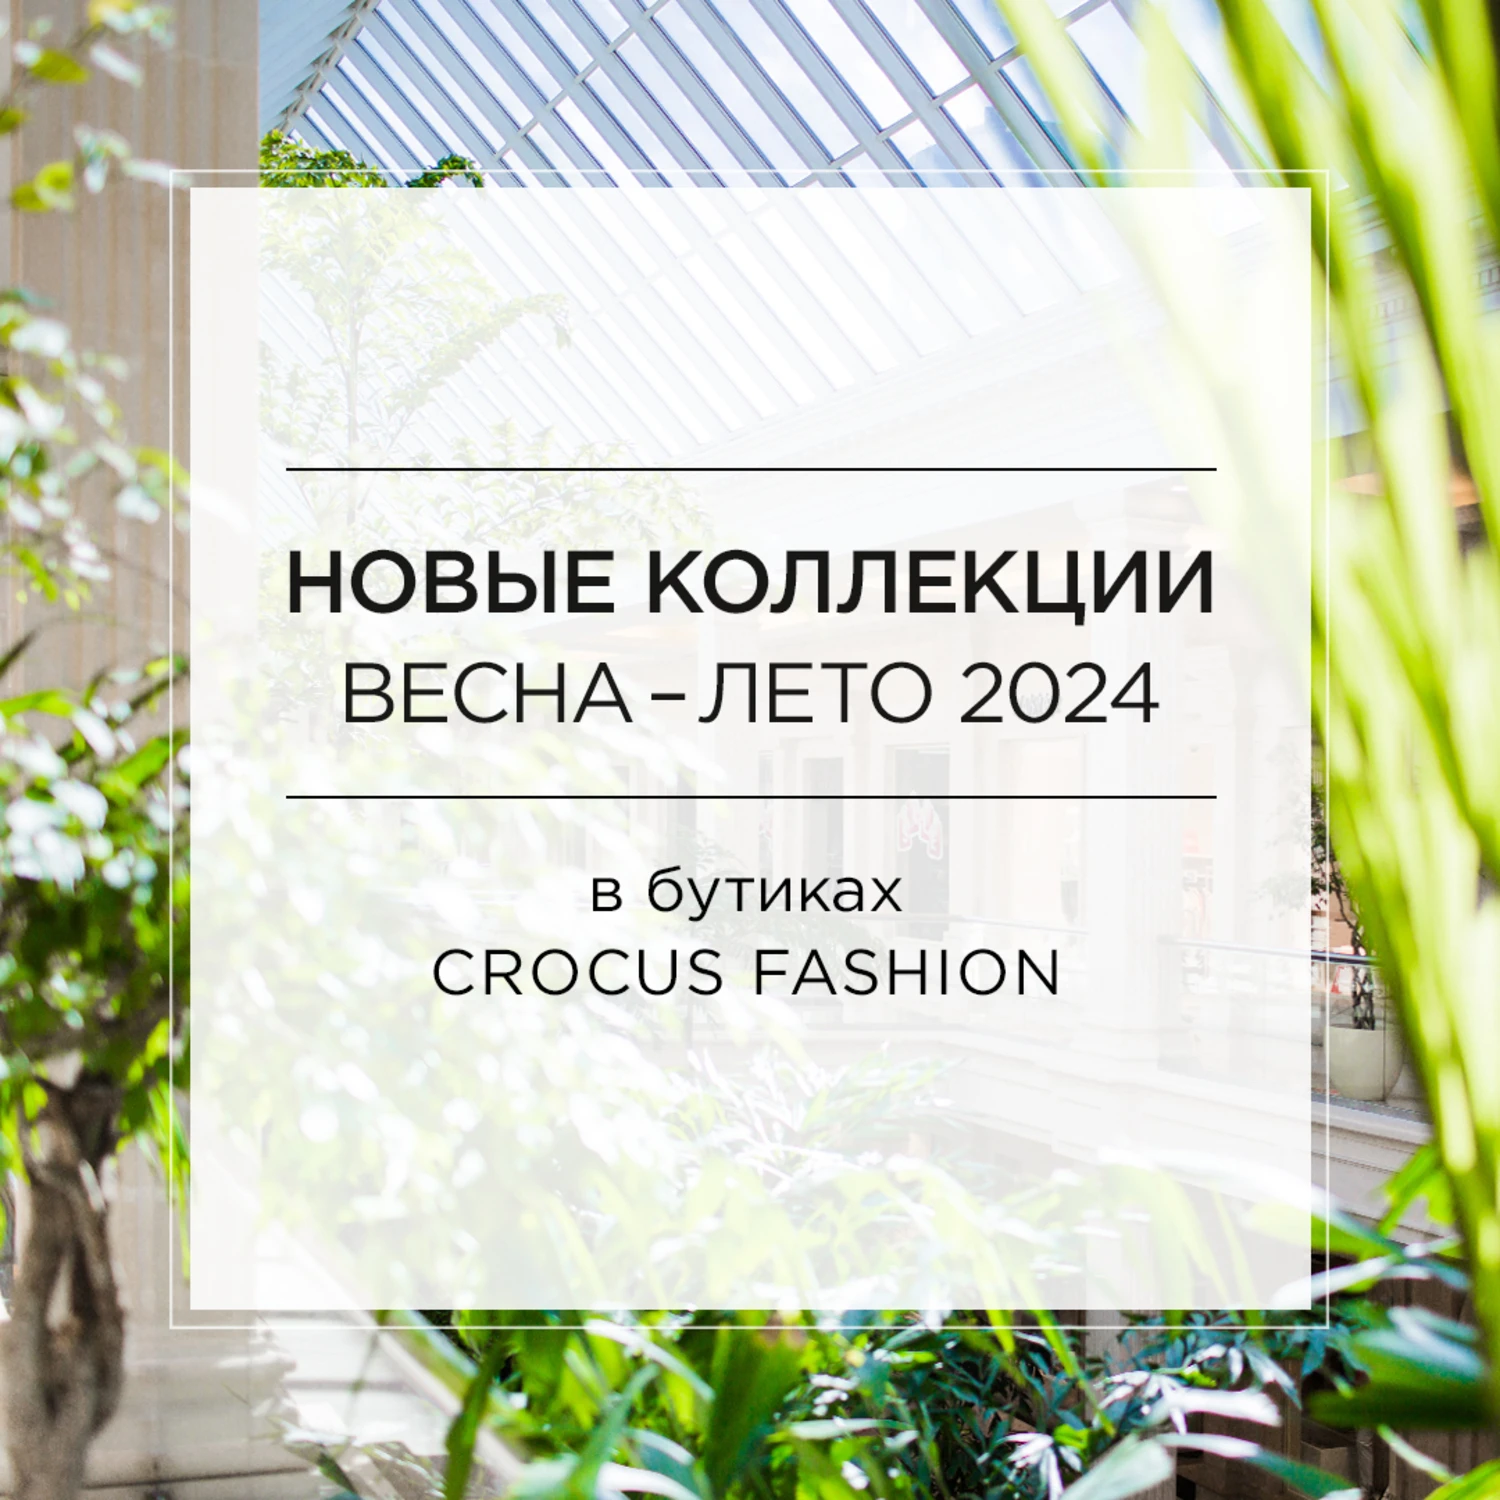 Новые коллекции в бутиках Crocus Fashion